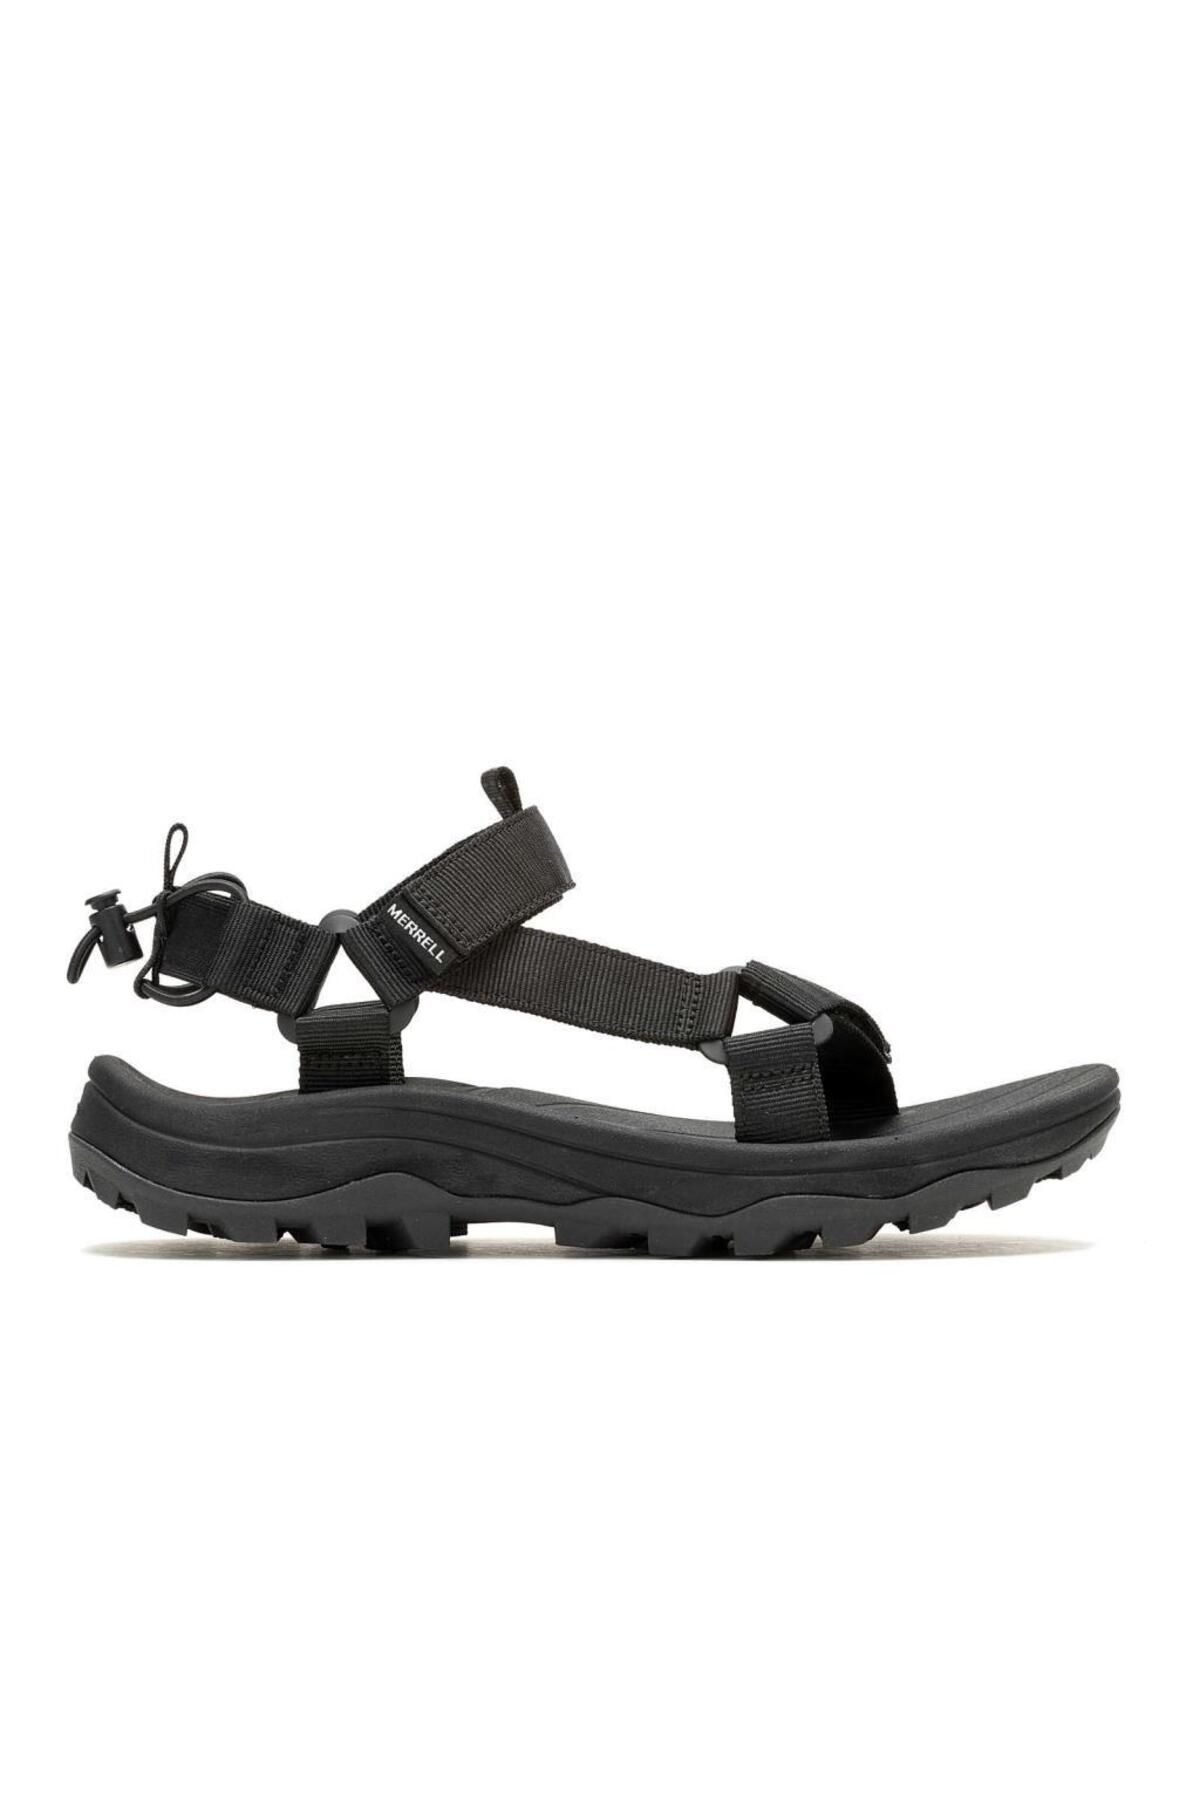 Merrell J006181 Speed Fusion Web Sport Black Erkek Sandalet